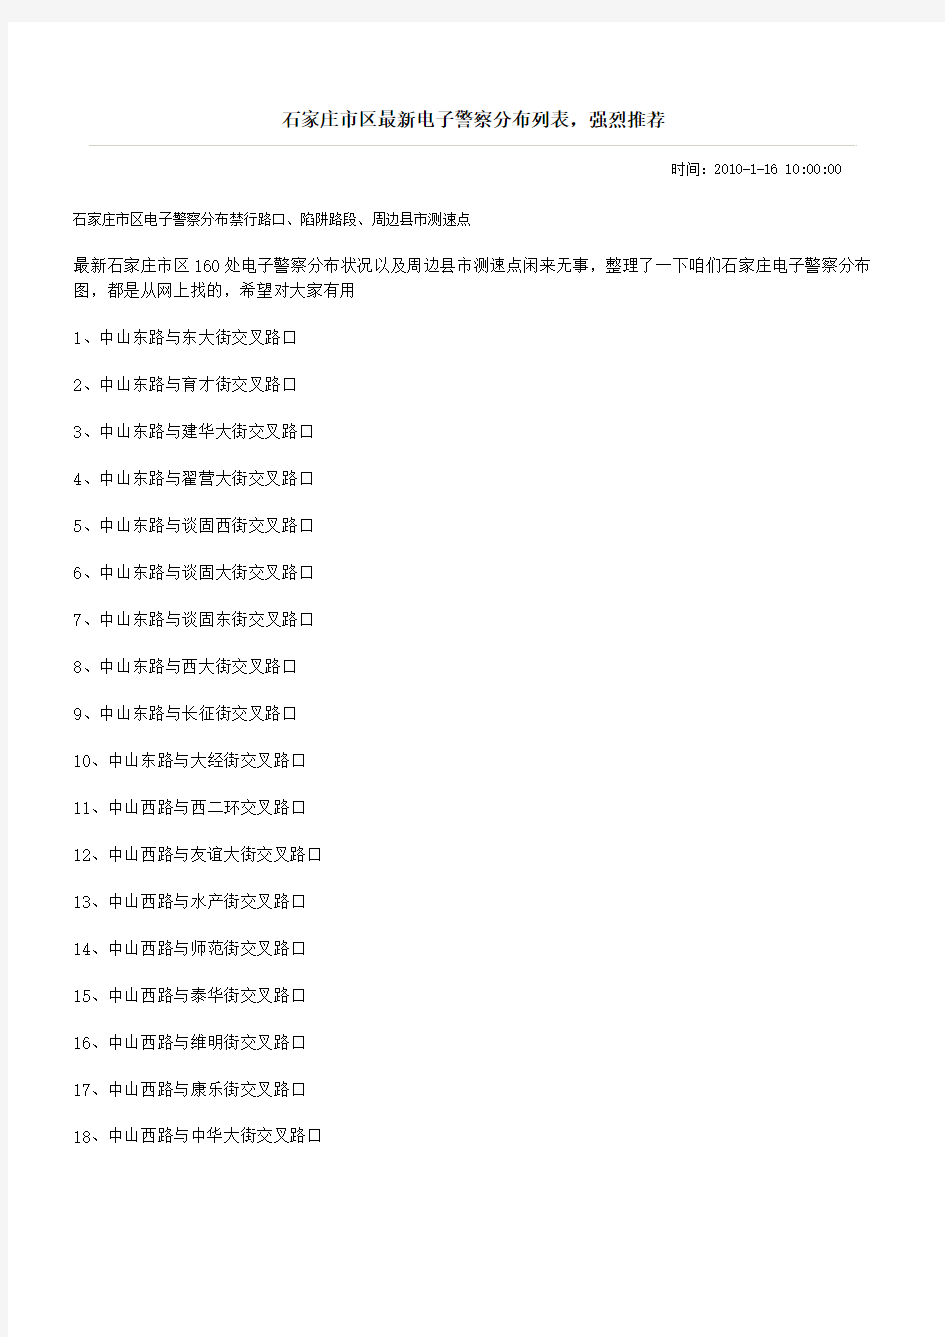 石家庄市区最新电子警察分布列表,强烈推荐